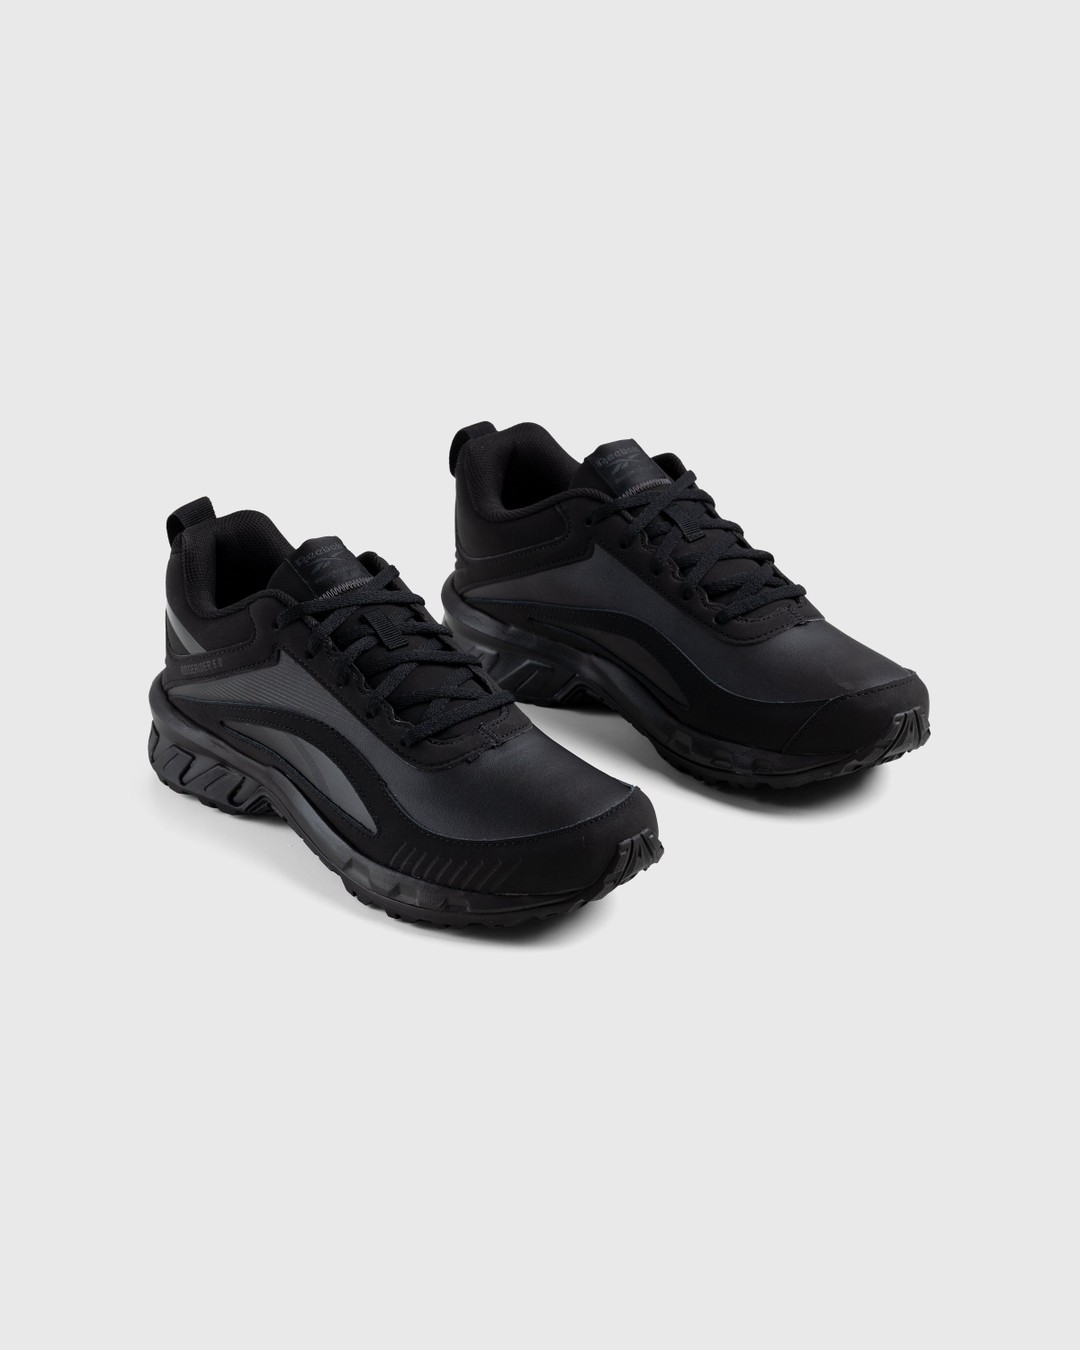 Reebok – Ridgerider 6.0 Leather Black - Low Top Sneakers - Black - Image 3